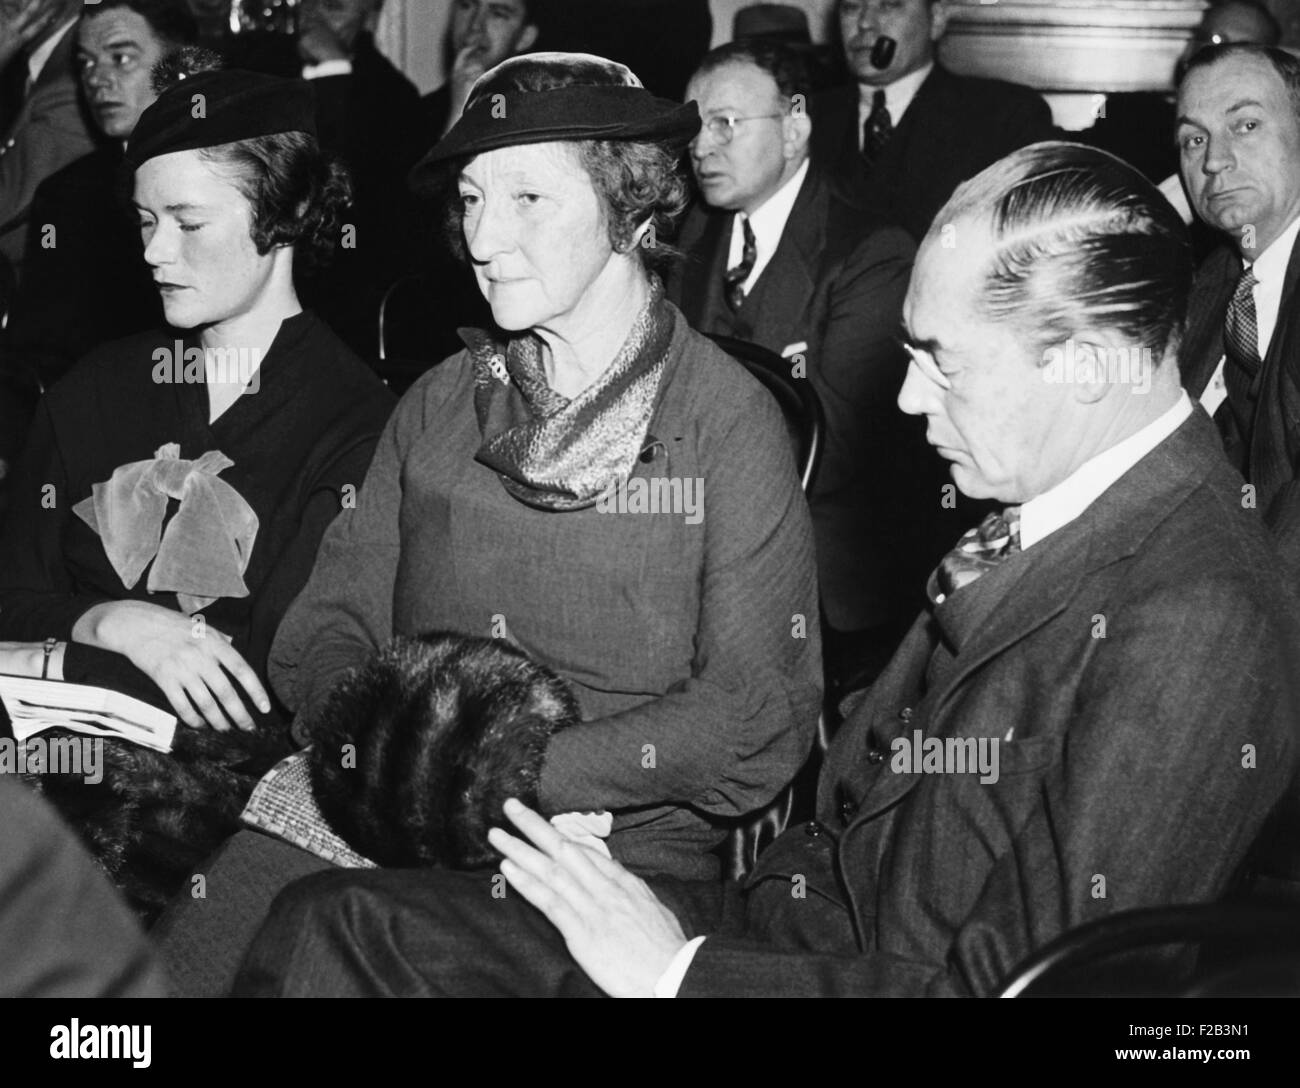 Mesdames DuPont à sonde de munitions. Droite à gauche : Félix DuPont, Mme DuPont et leur fille Lydia, représenté comme spectateurs devant le Sénat, sonde de munitions le 17 décembre 1934. - (CSU 2015 5 50) Banque D'Images